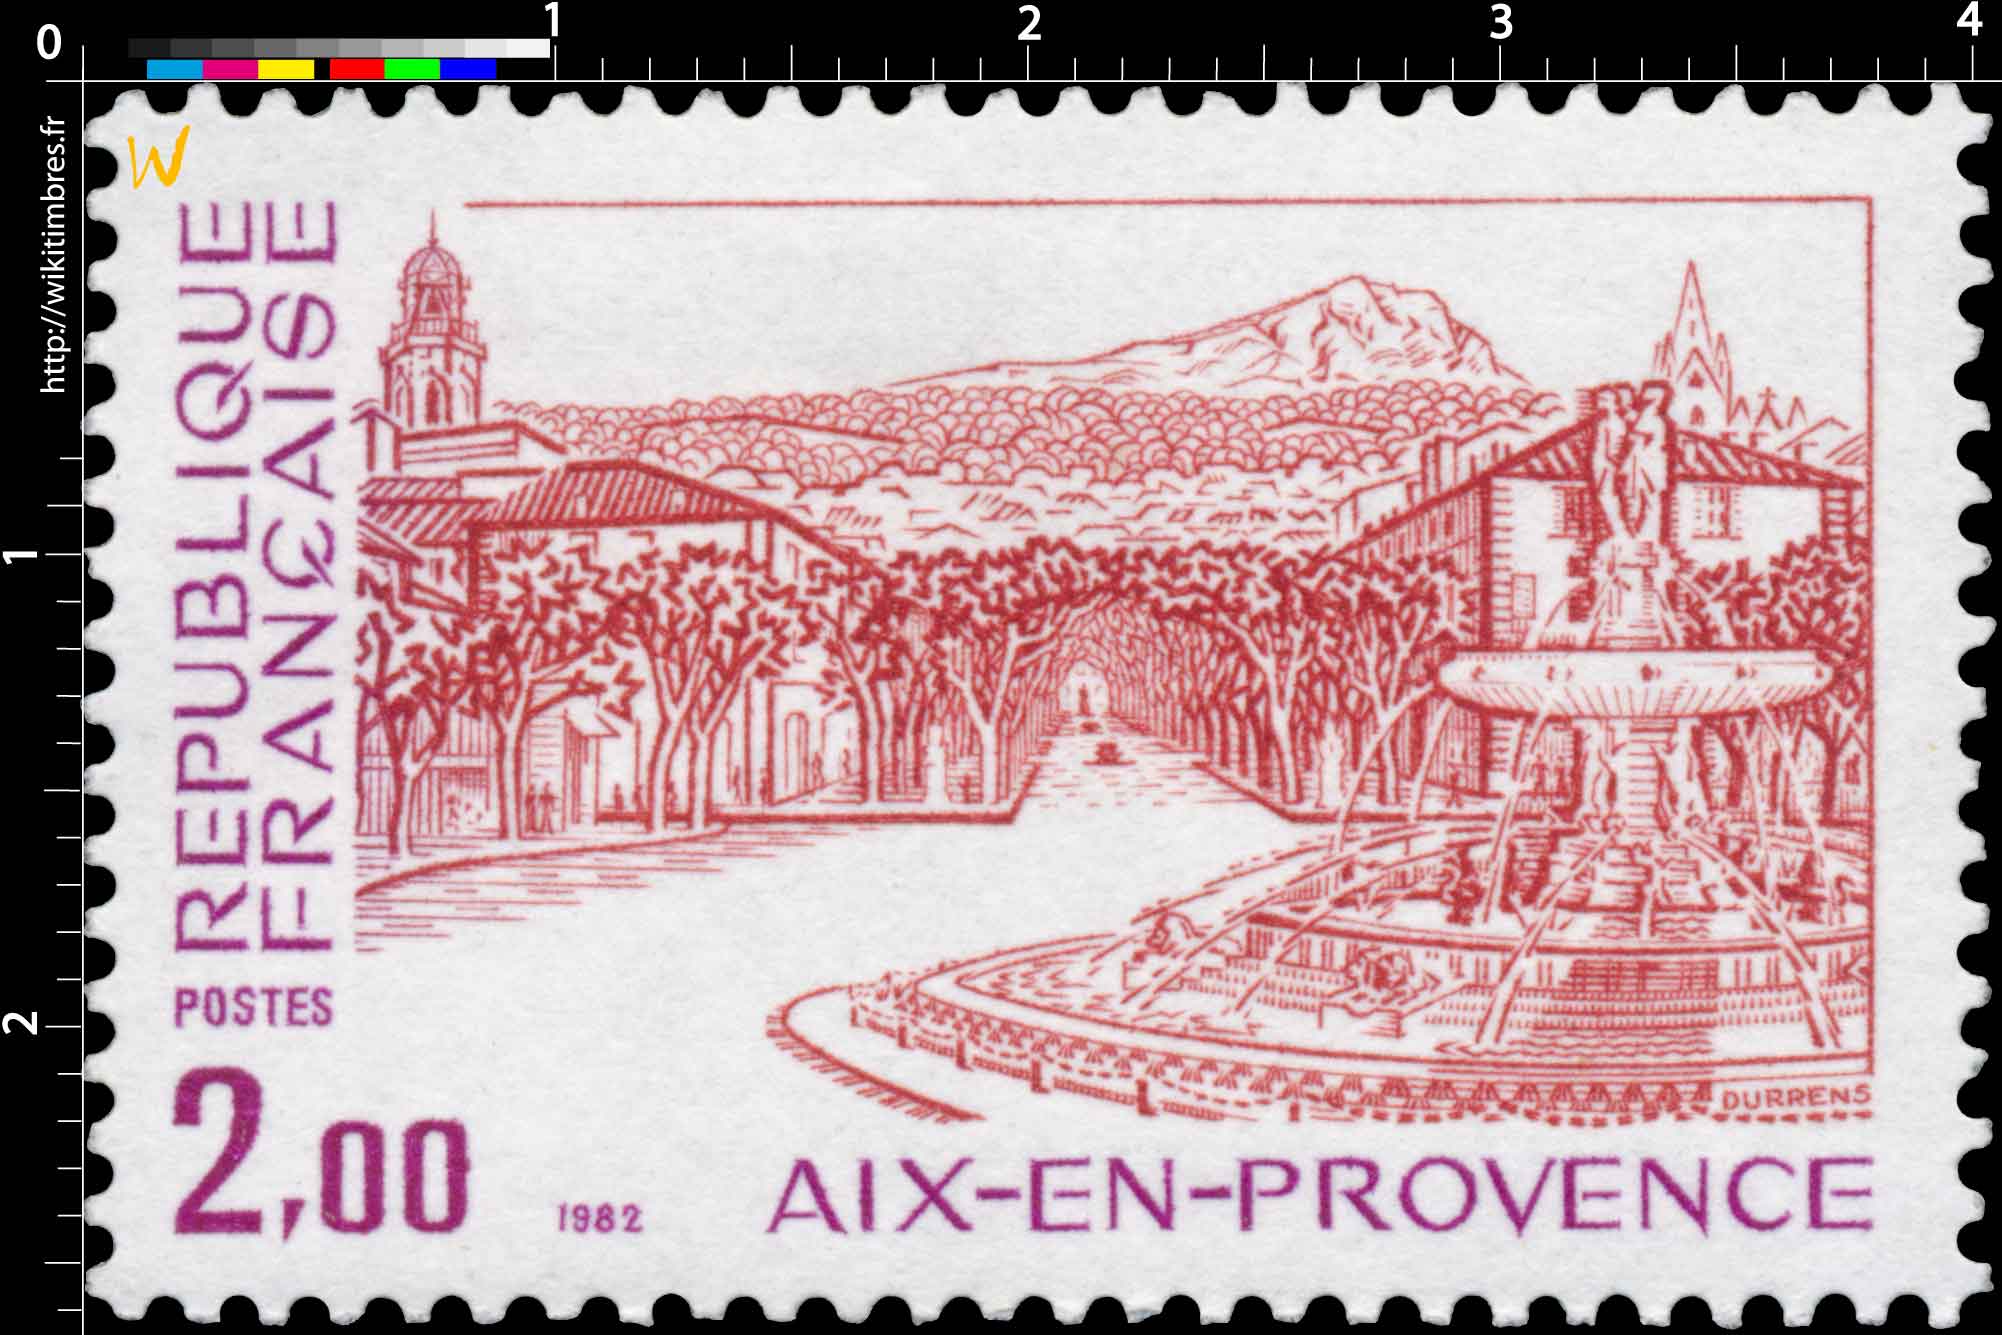 1982 AIX-EN-PROVENCE